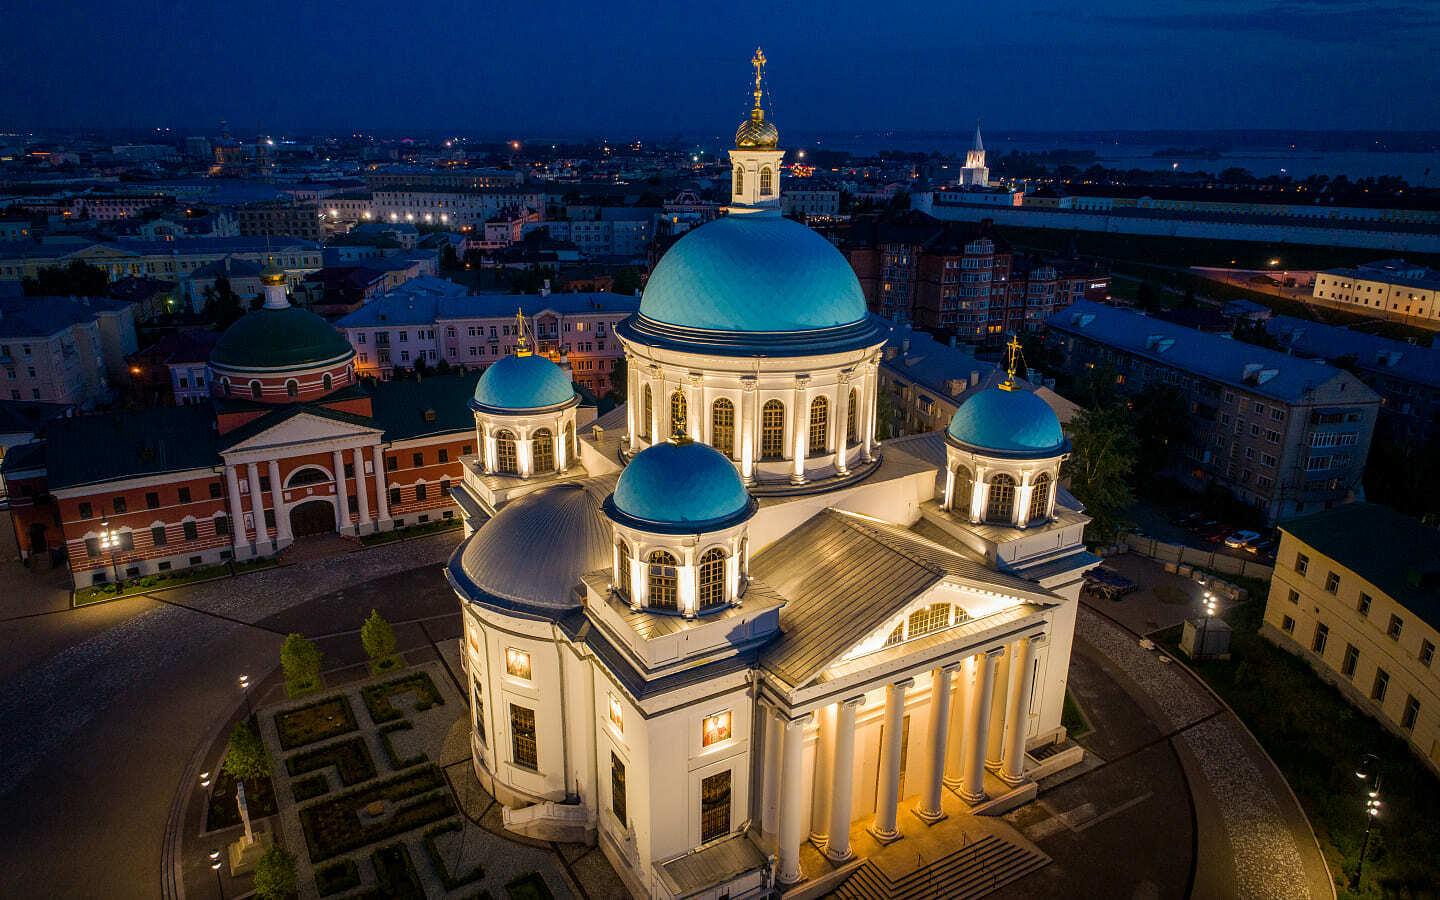 казанский собор казань